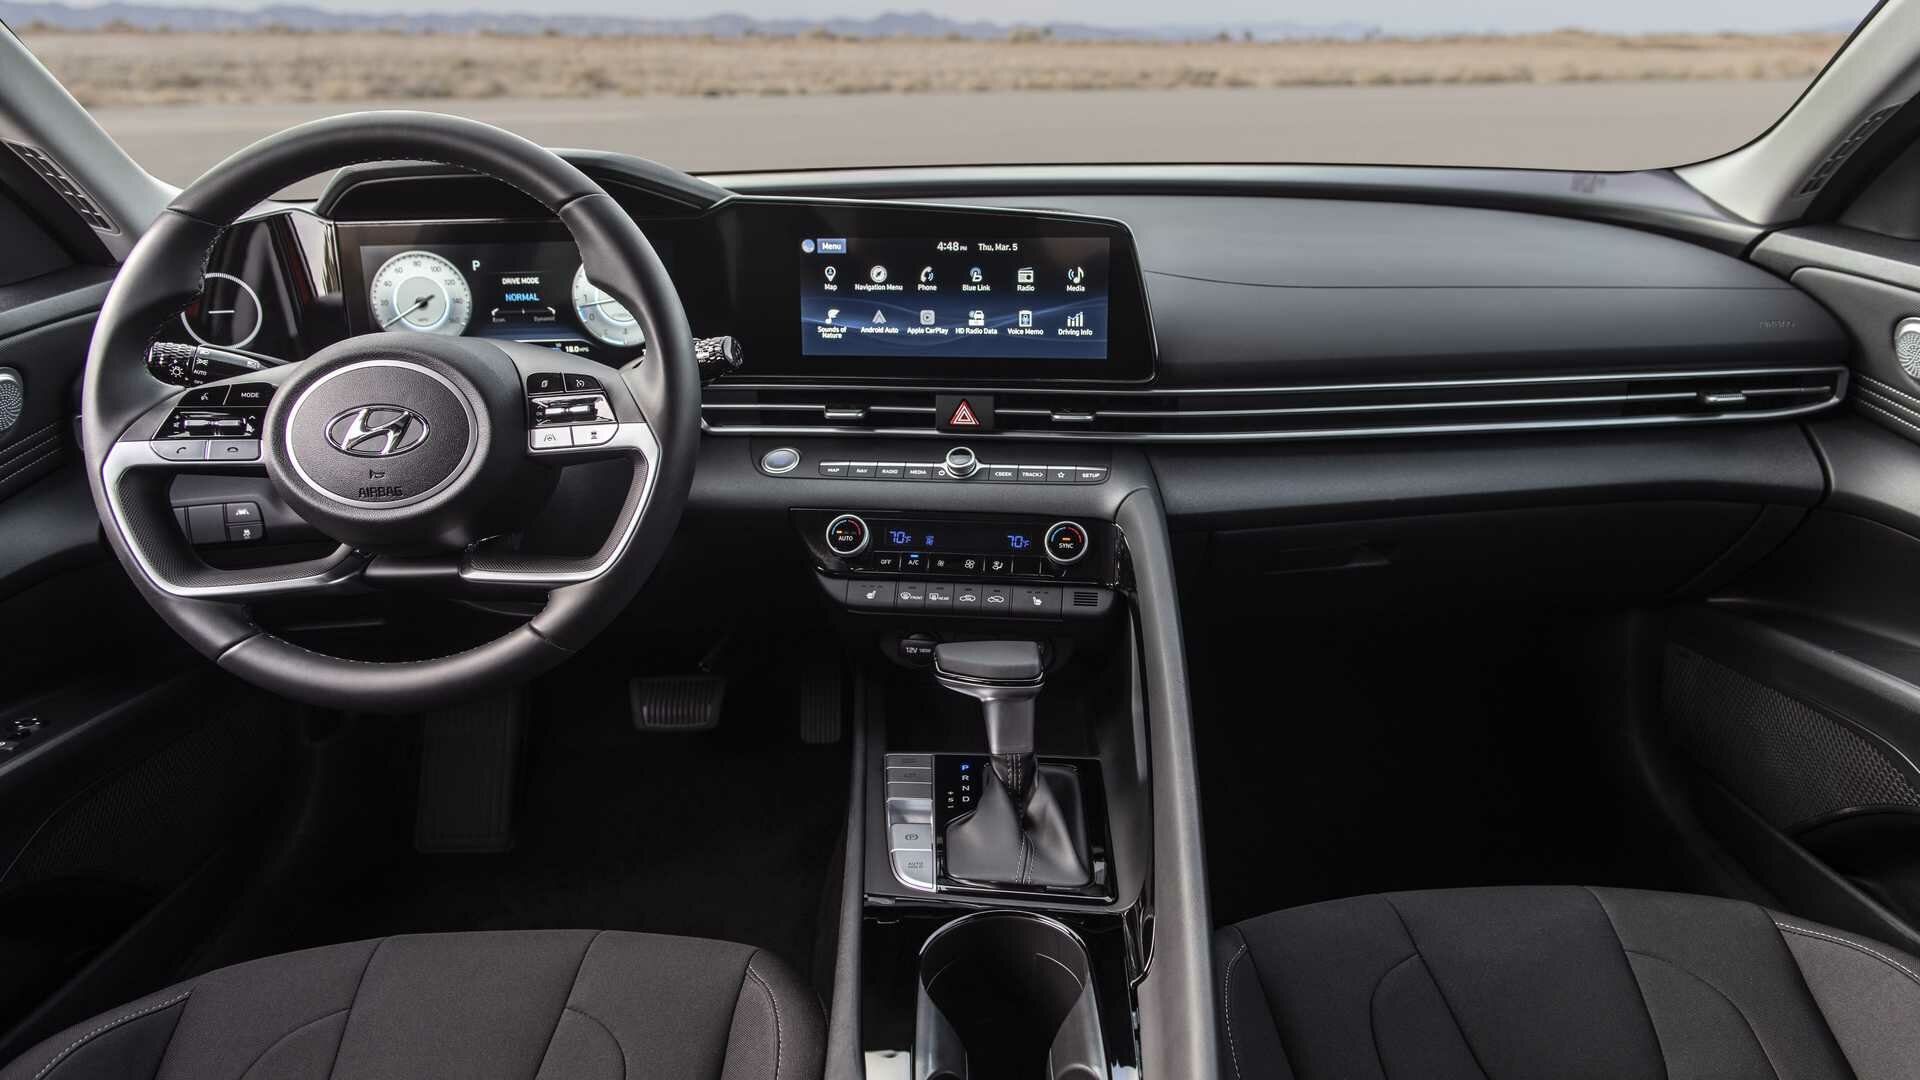 В салоне место водителя отделено от зоны переднего пассажира массивным поручнем. В богатых версиях модель получит два 10,25-дюймовых экрана: цифровую приборку и мультимедийную систему. В оснащении также заявлены фоновая подсветка интерьера с 64 цветами и аудиосистема Bose с восемью динамиками.